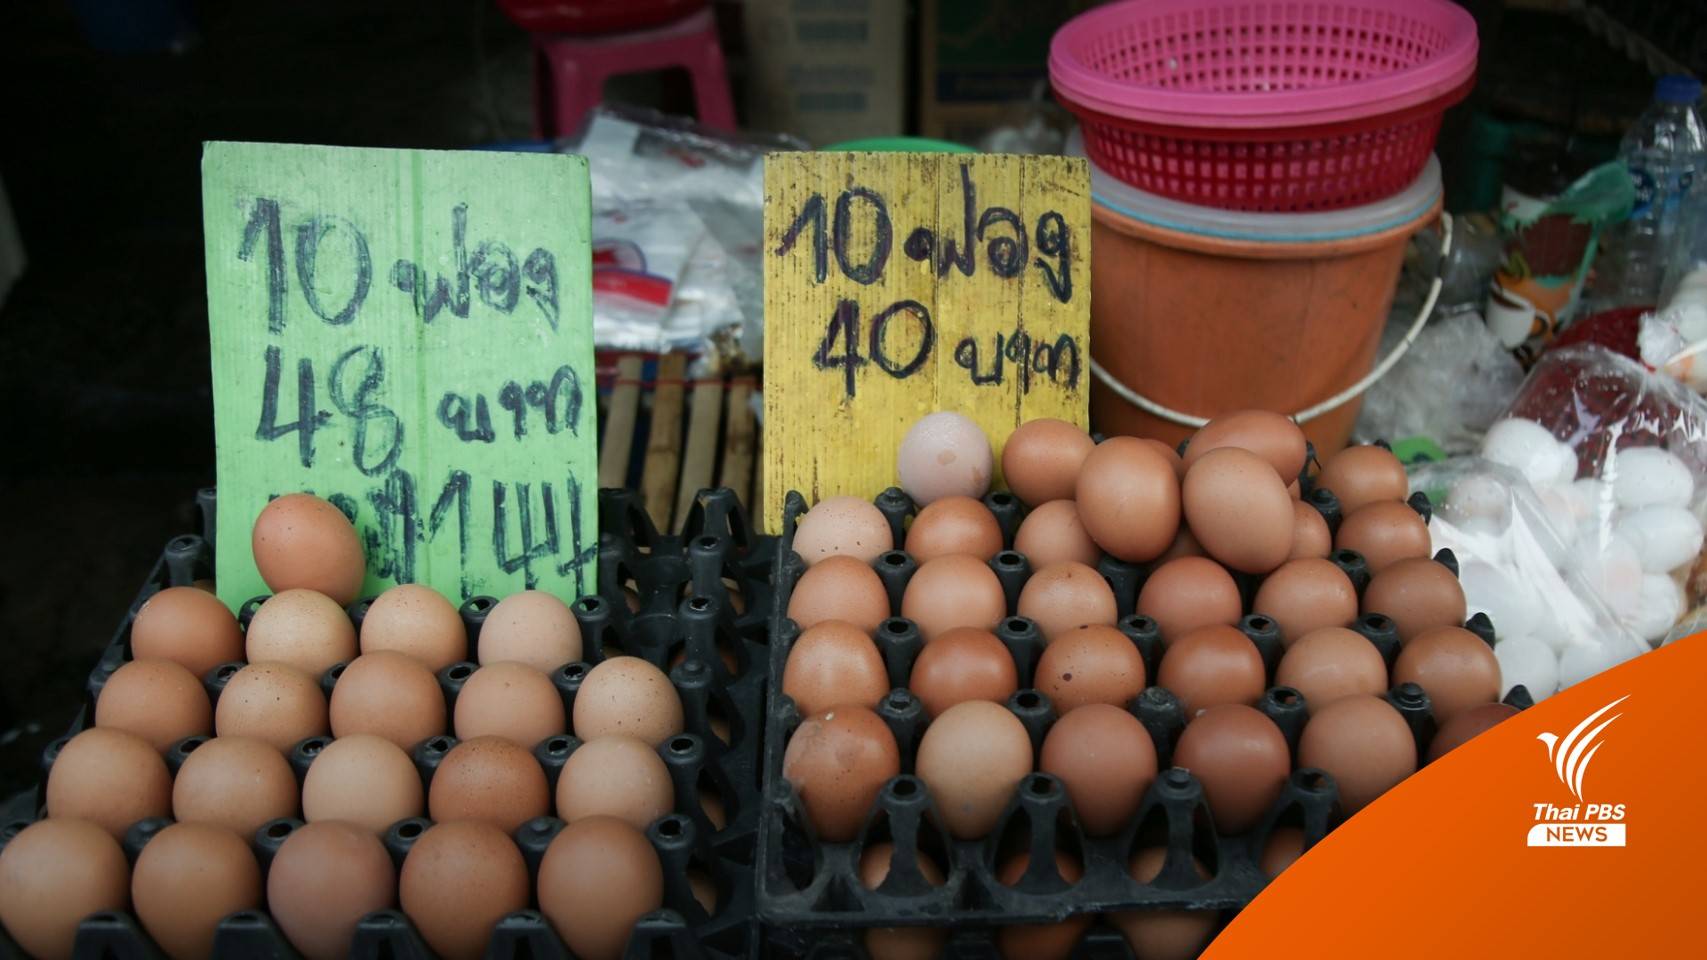 ใครบ้าง? กิน "ไข่ไก่แพง" จ่อฟองละ 4 บาท-ร้านข้าวตามสั่งไข่ดาวพุ่ง 10 บาท